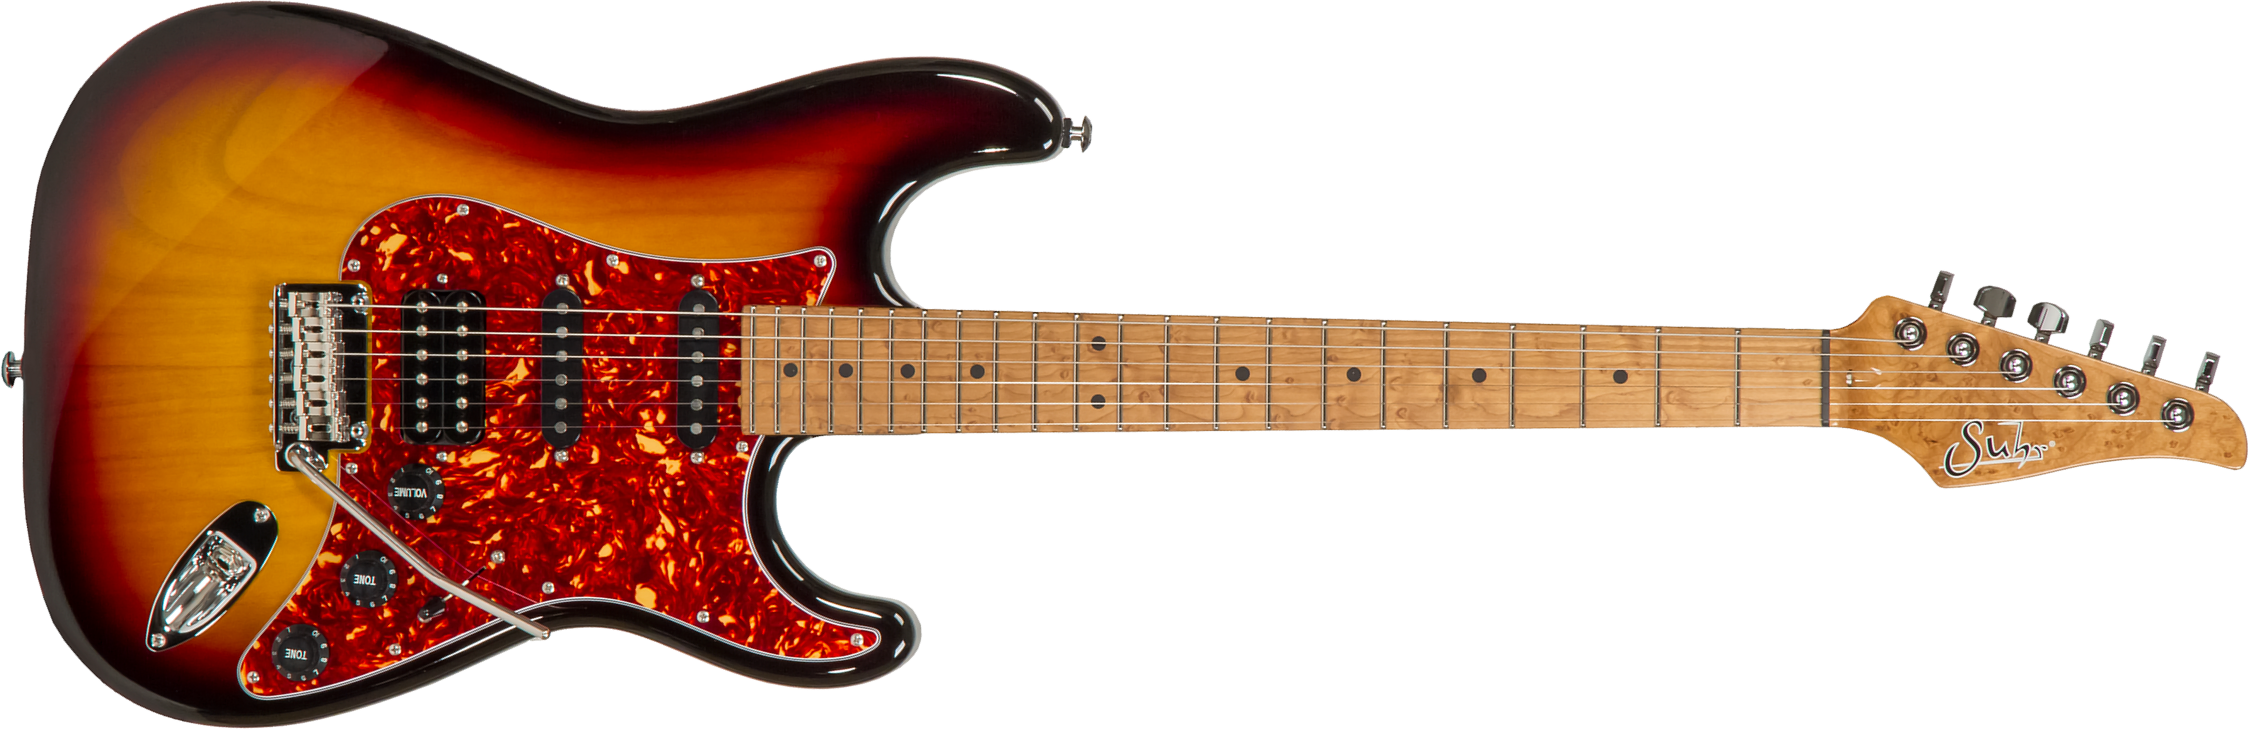 Suhr Classic S Paulownia 01-ltd-0021 Hss Trem Rw #70279 - 3-tone Burst - Guitare Électrique Forme Str - Main picture